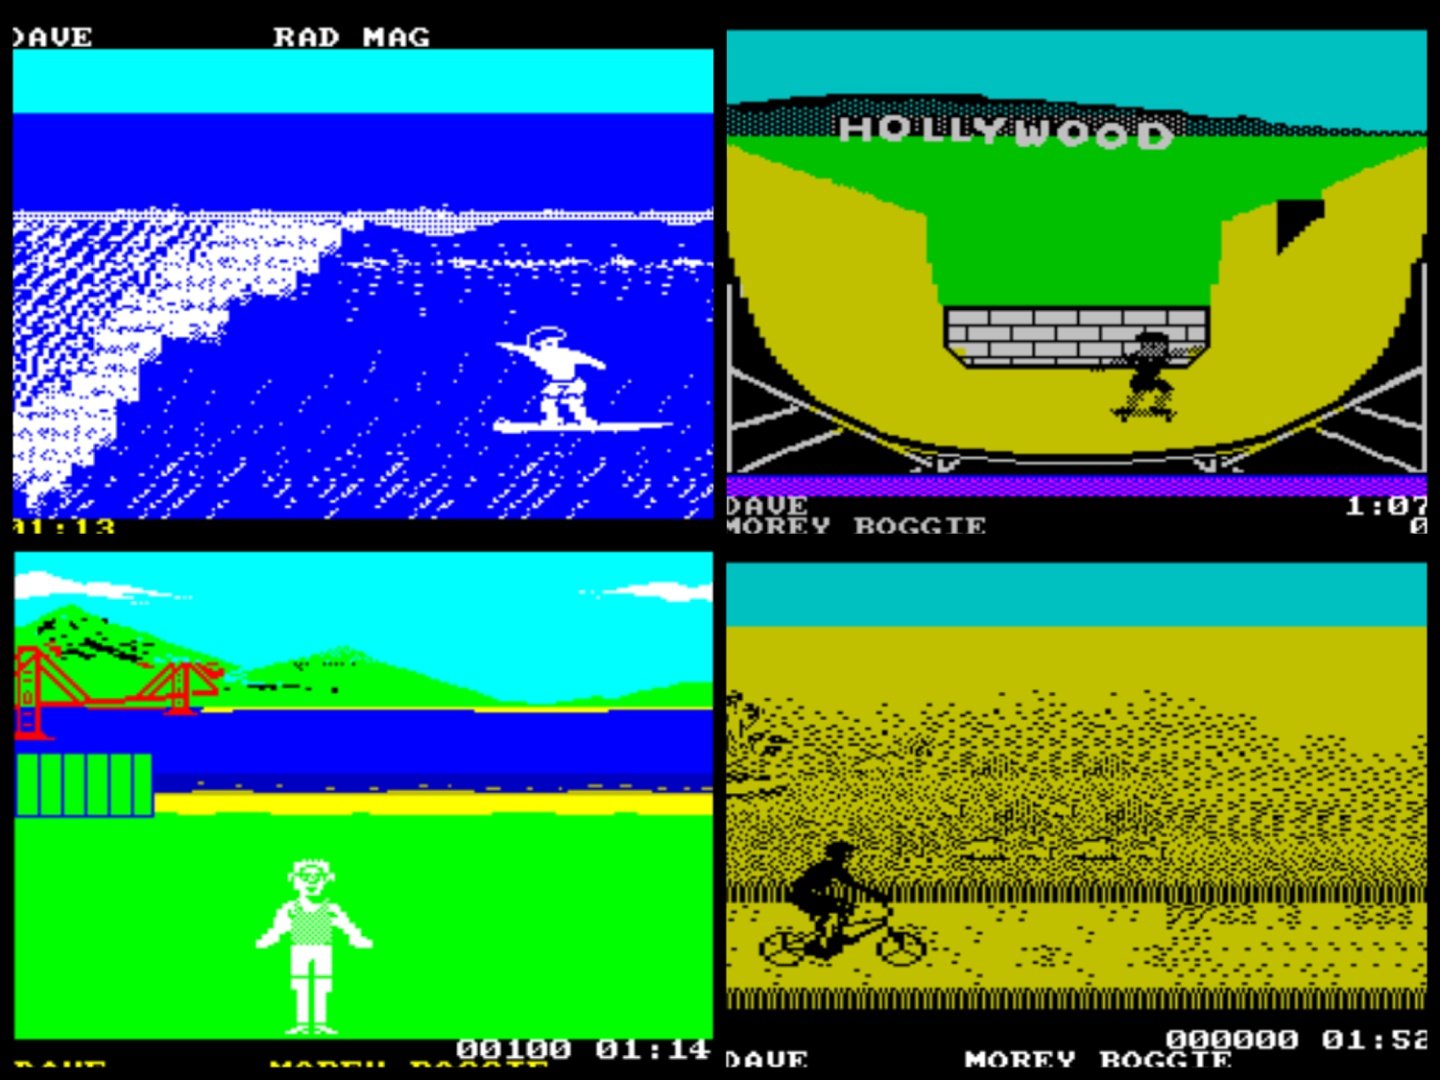 The Spectrum version of California Games